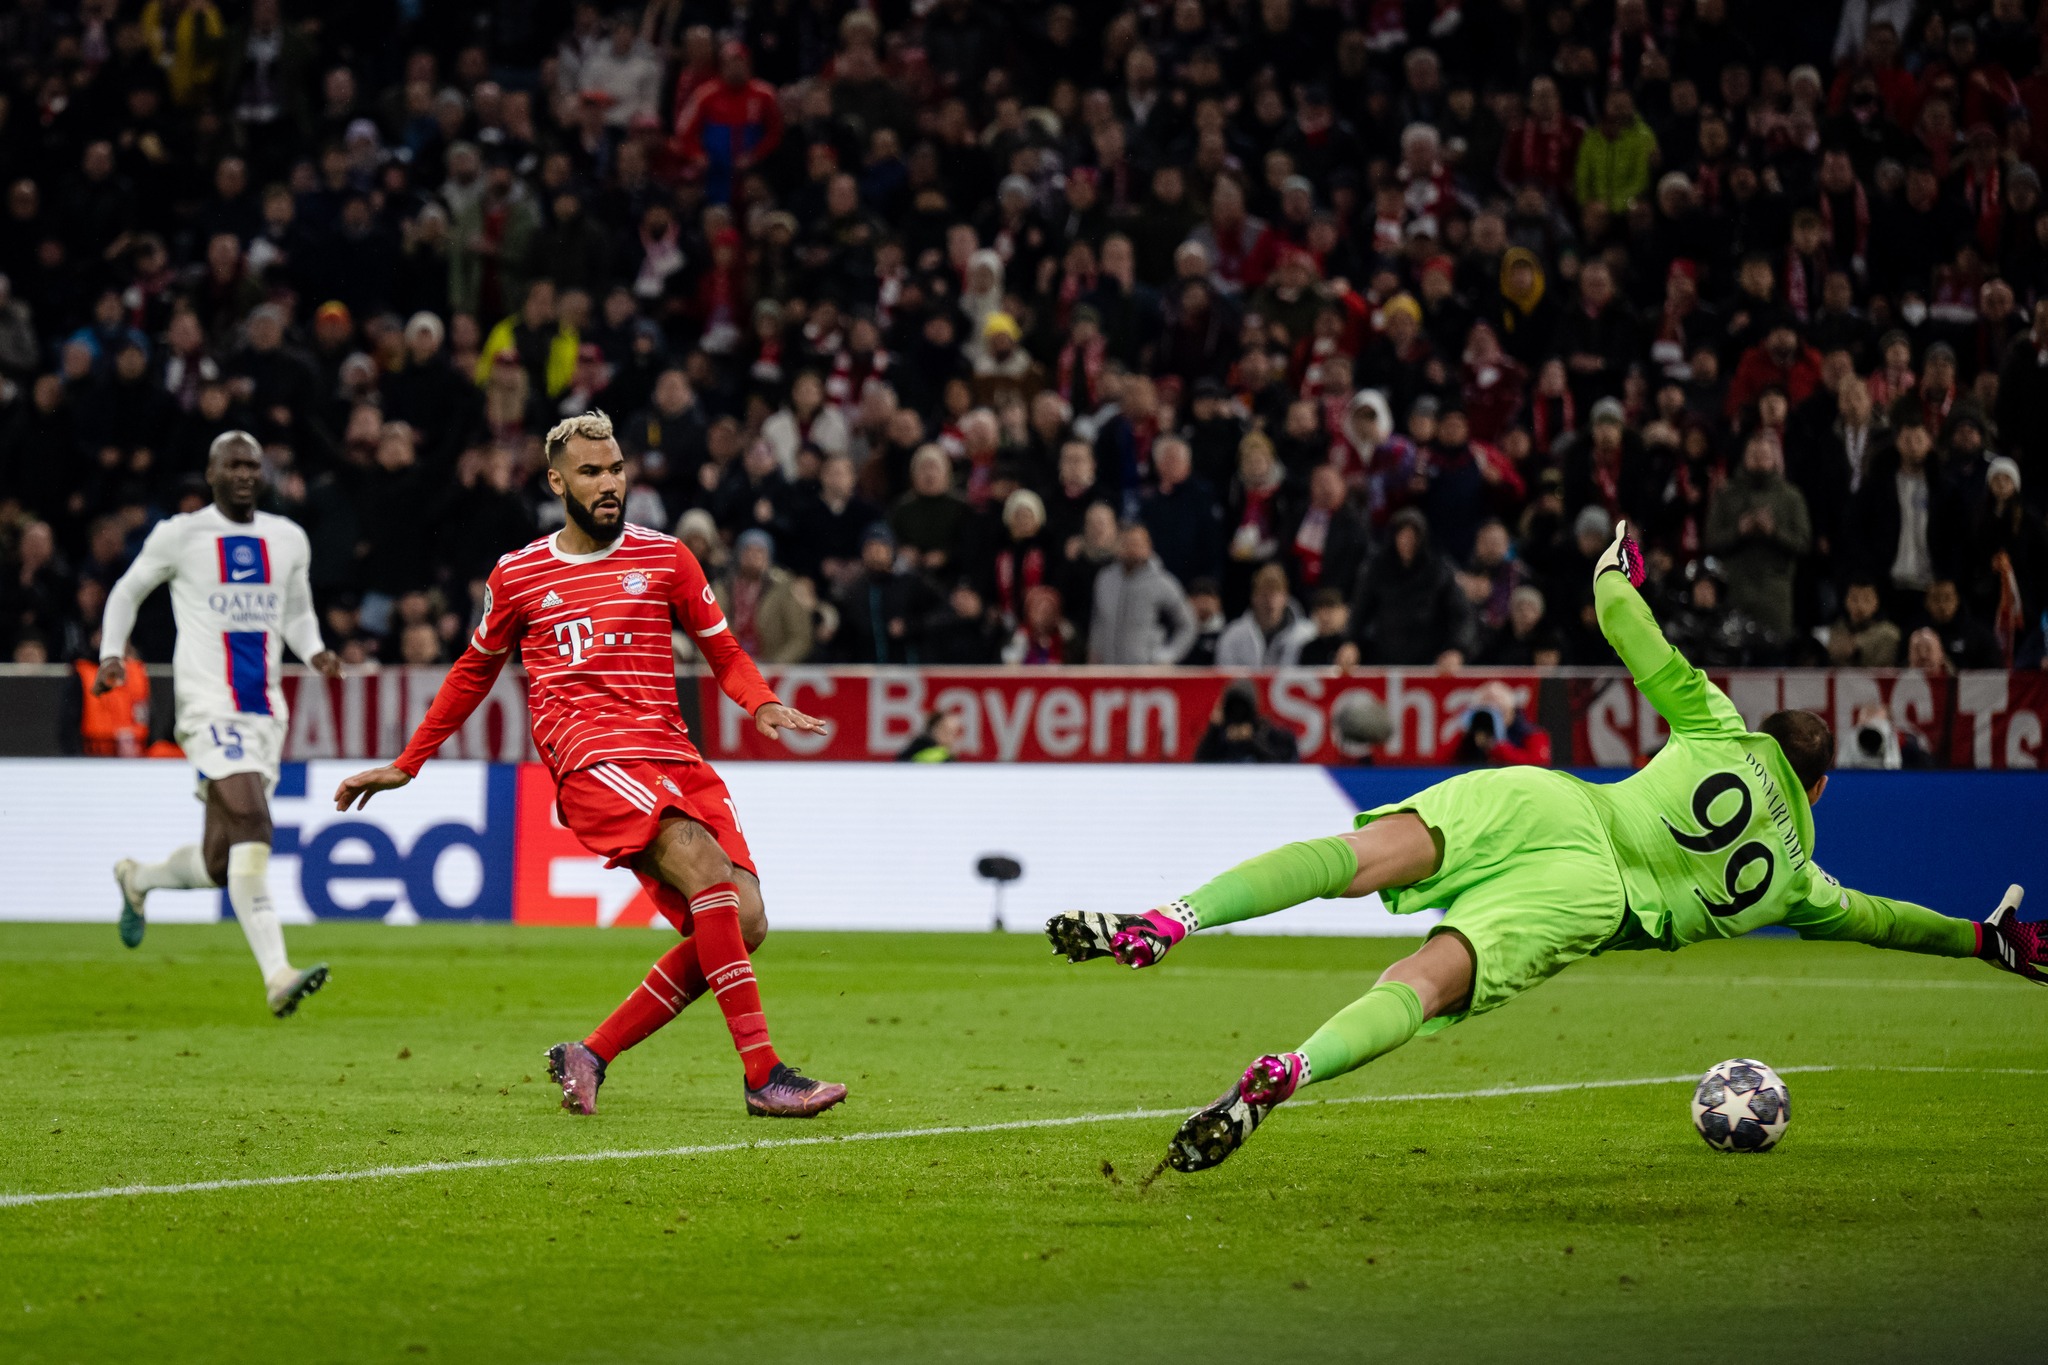 Bayerni fiton me lehtësi ndaj Parisit të Mbappes e Messit dhe kualifikohet në çerekfinale